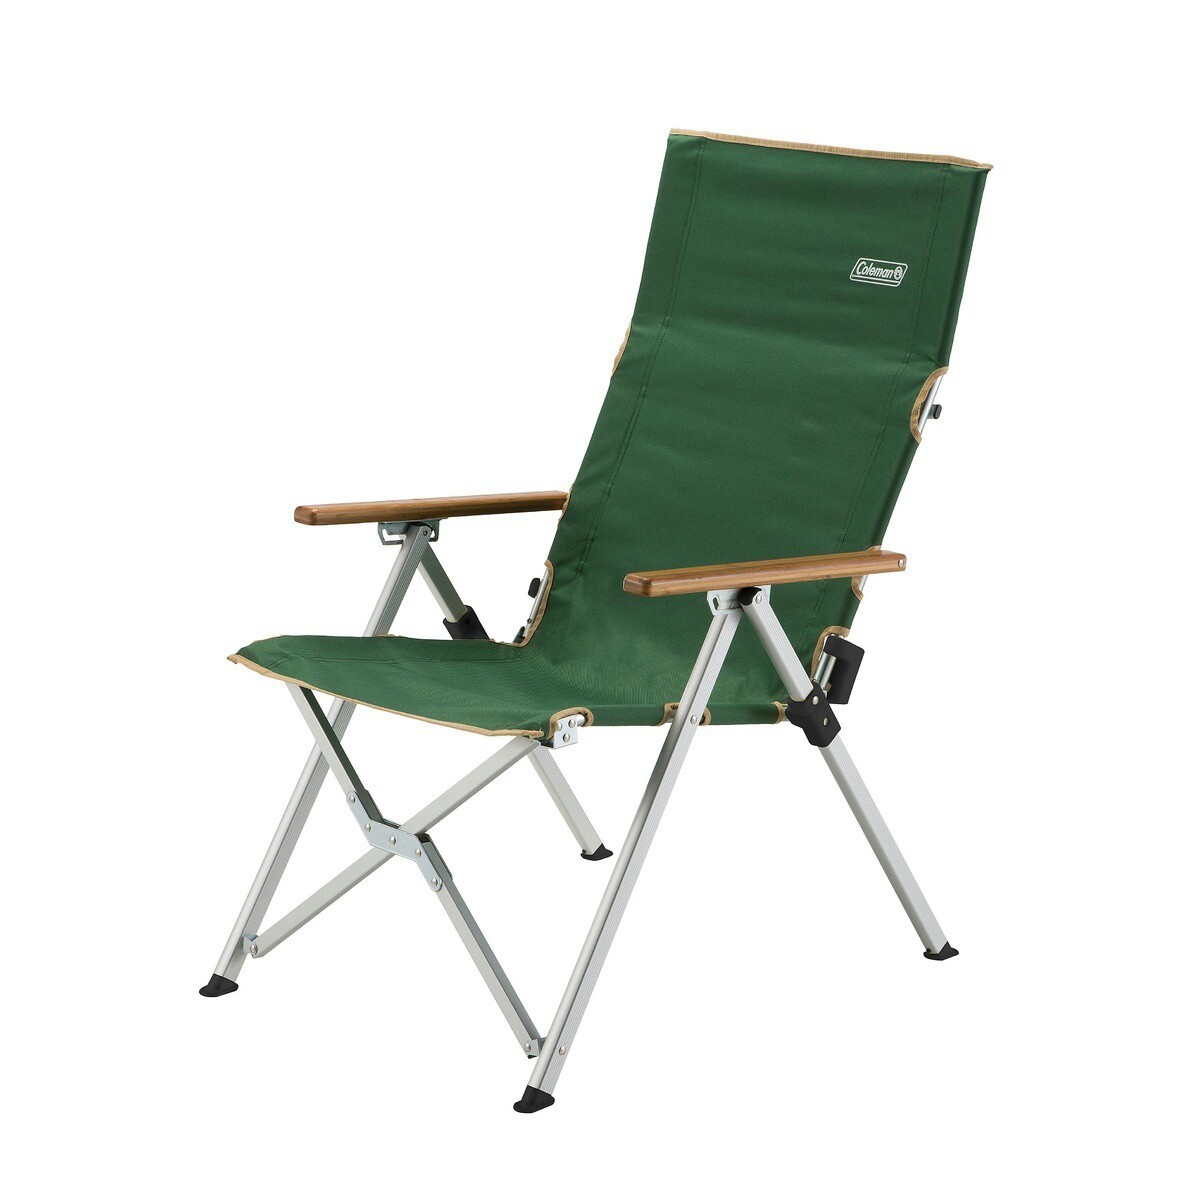 キャンプ用品 ファミリーチェア 椅子 レイチェアグリーン グリーン